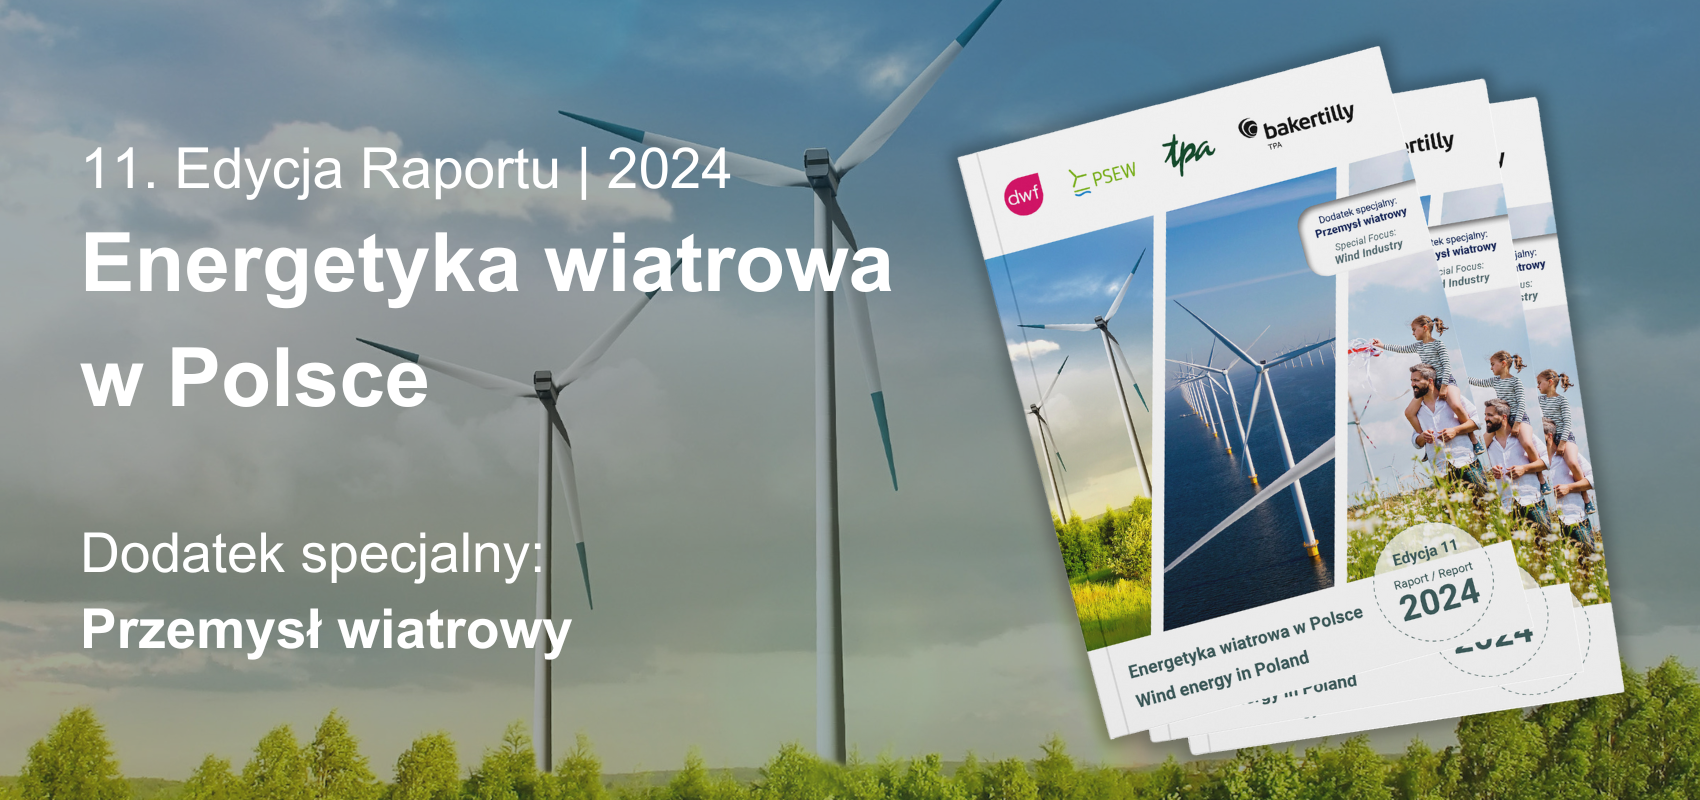 Gdzie jest i dokąd zmierza polska energia z wiatru? – raport „Energetyka Wiatrowa w Polsce”